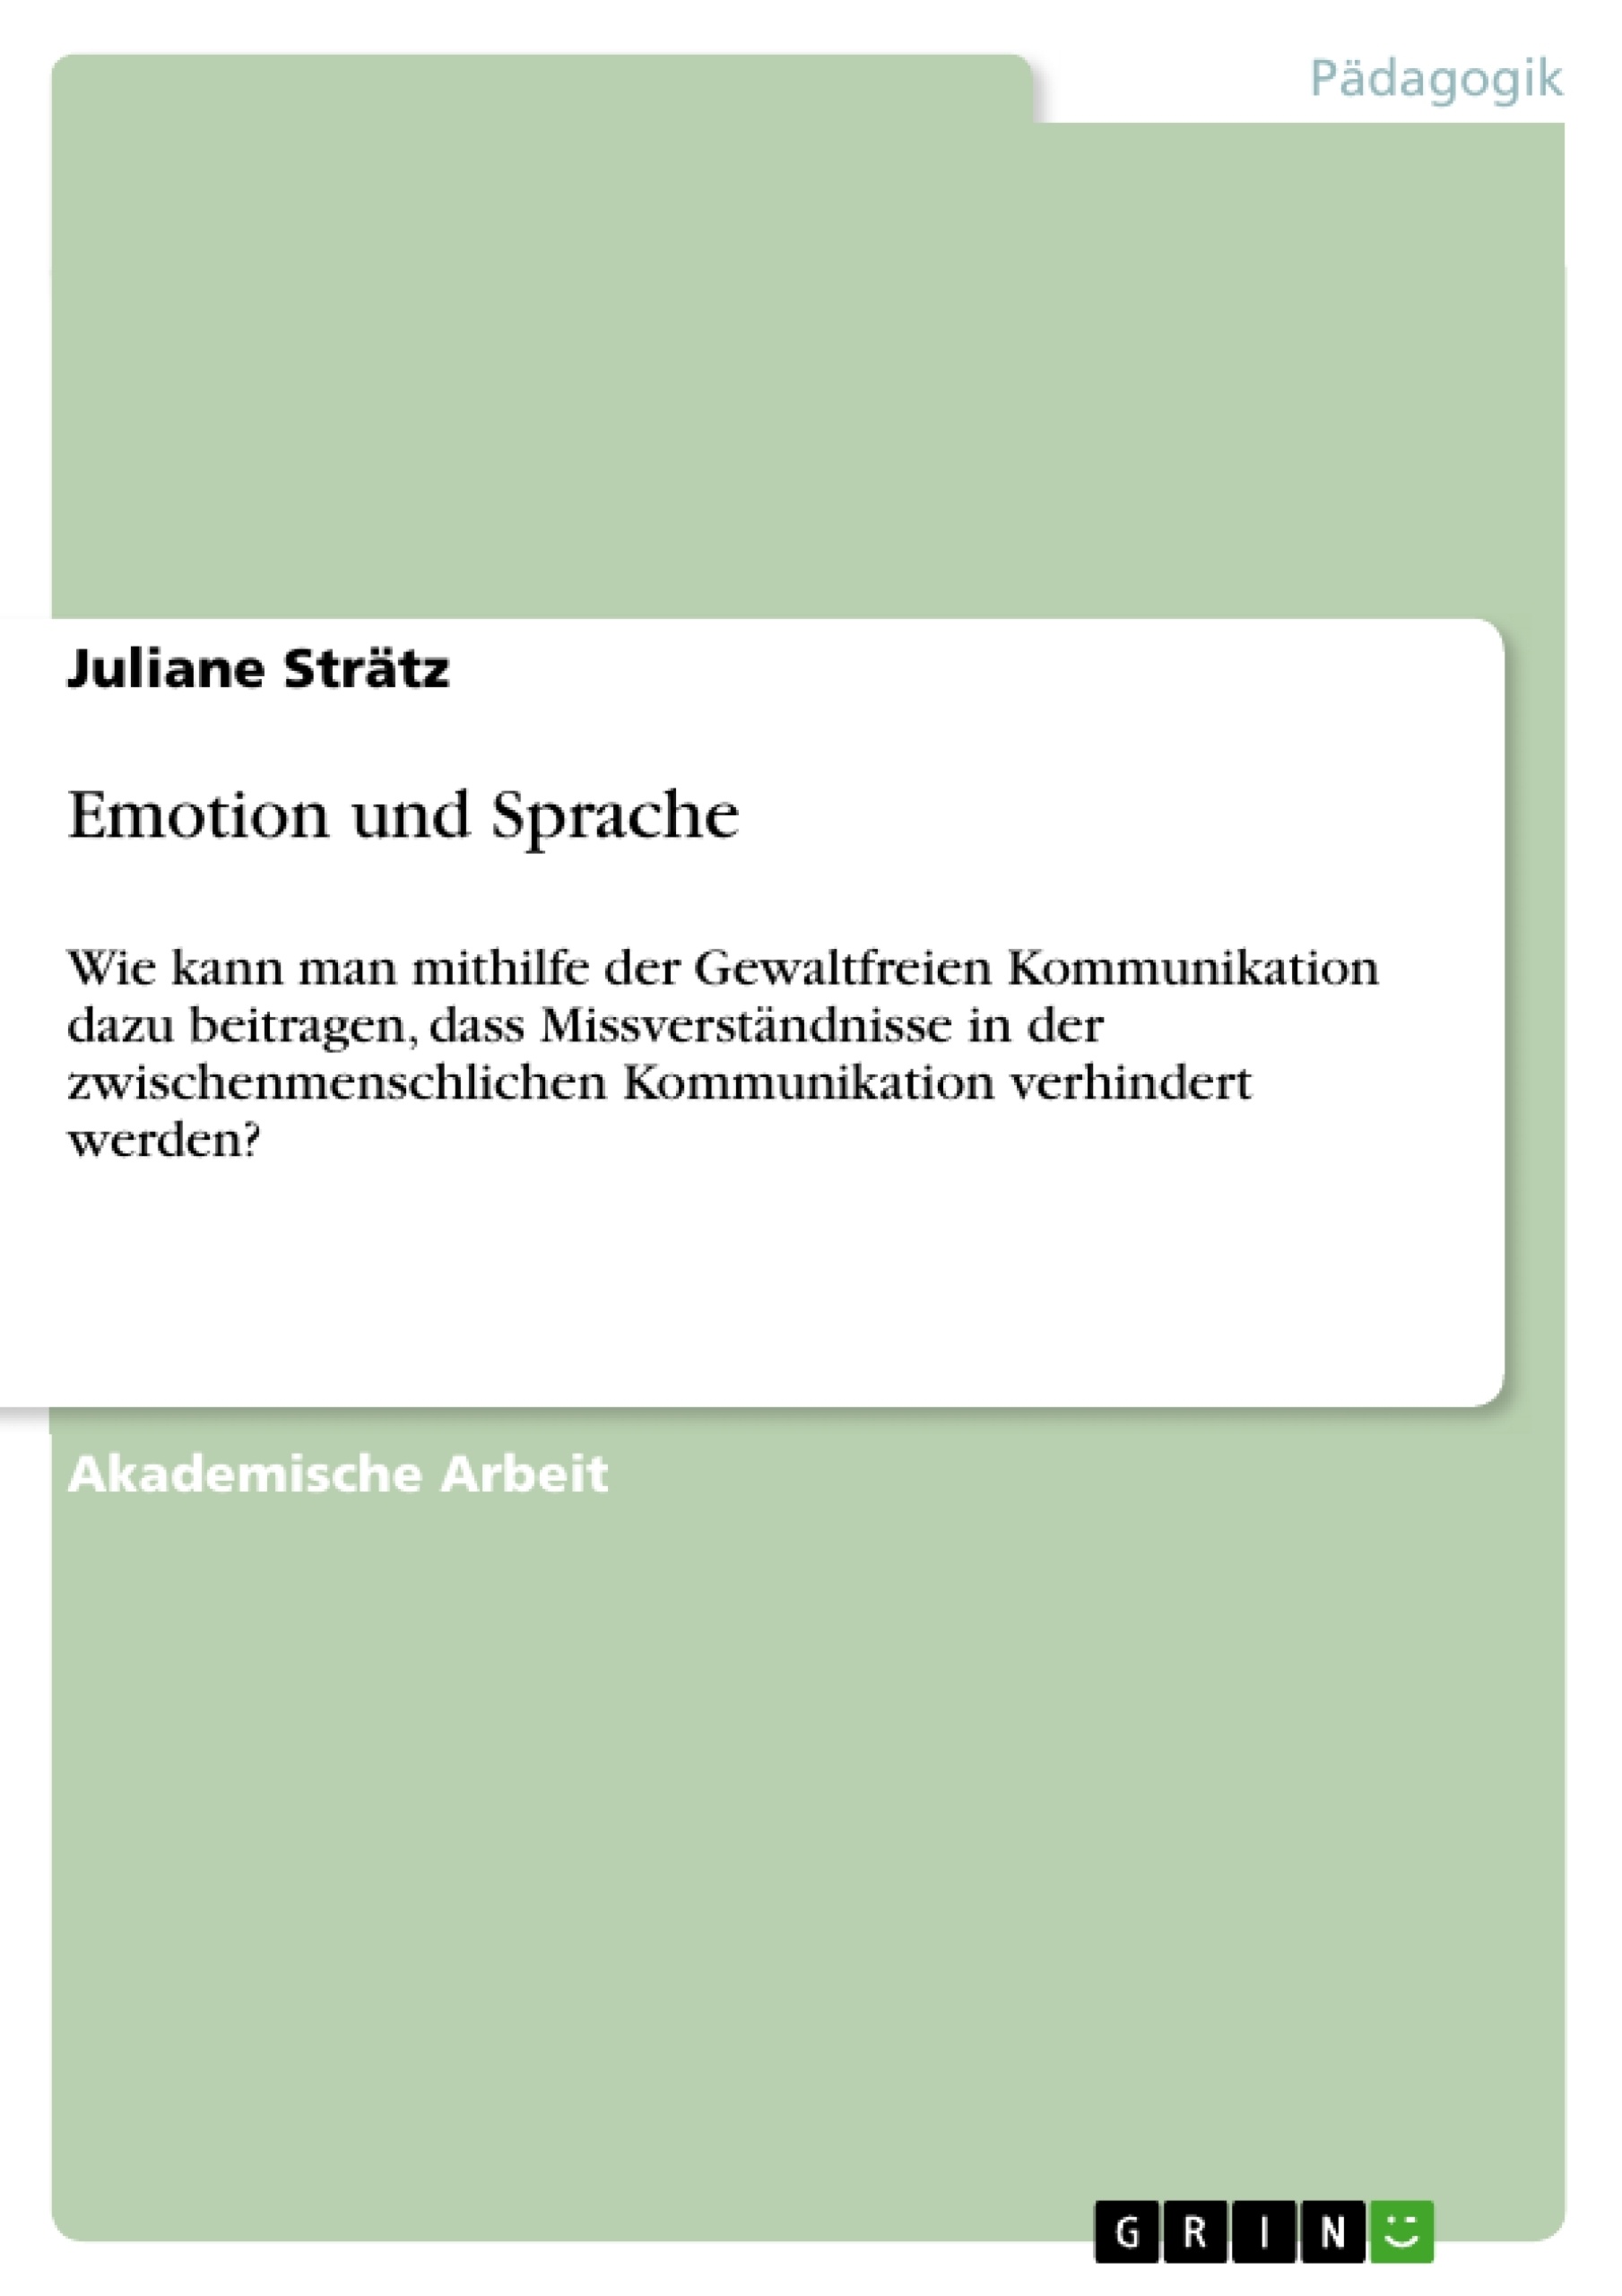 Título: Emotion und Sprache